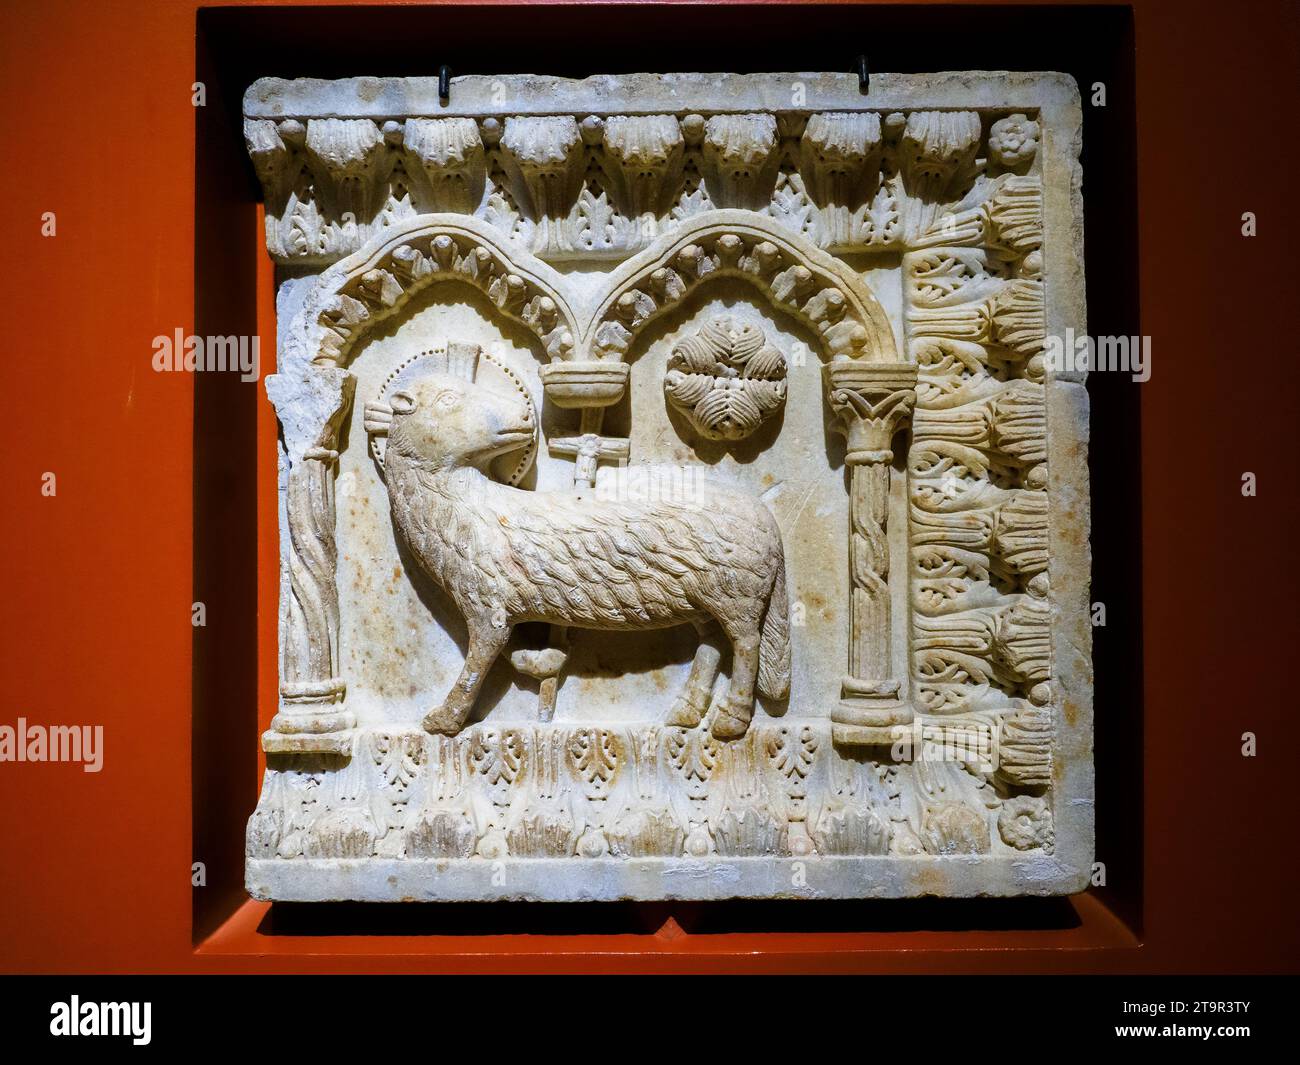 Agneau mystique par sculpteur sicilien inconnu, marbre, 12e siècle - Musée diocésain d'Agrigente - Sicile, Italie Banque D'Images